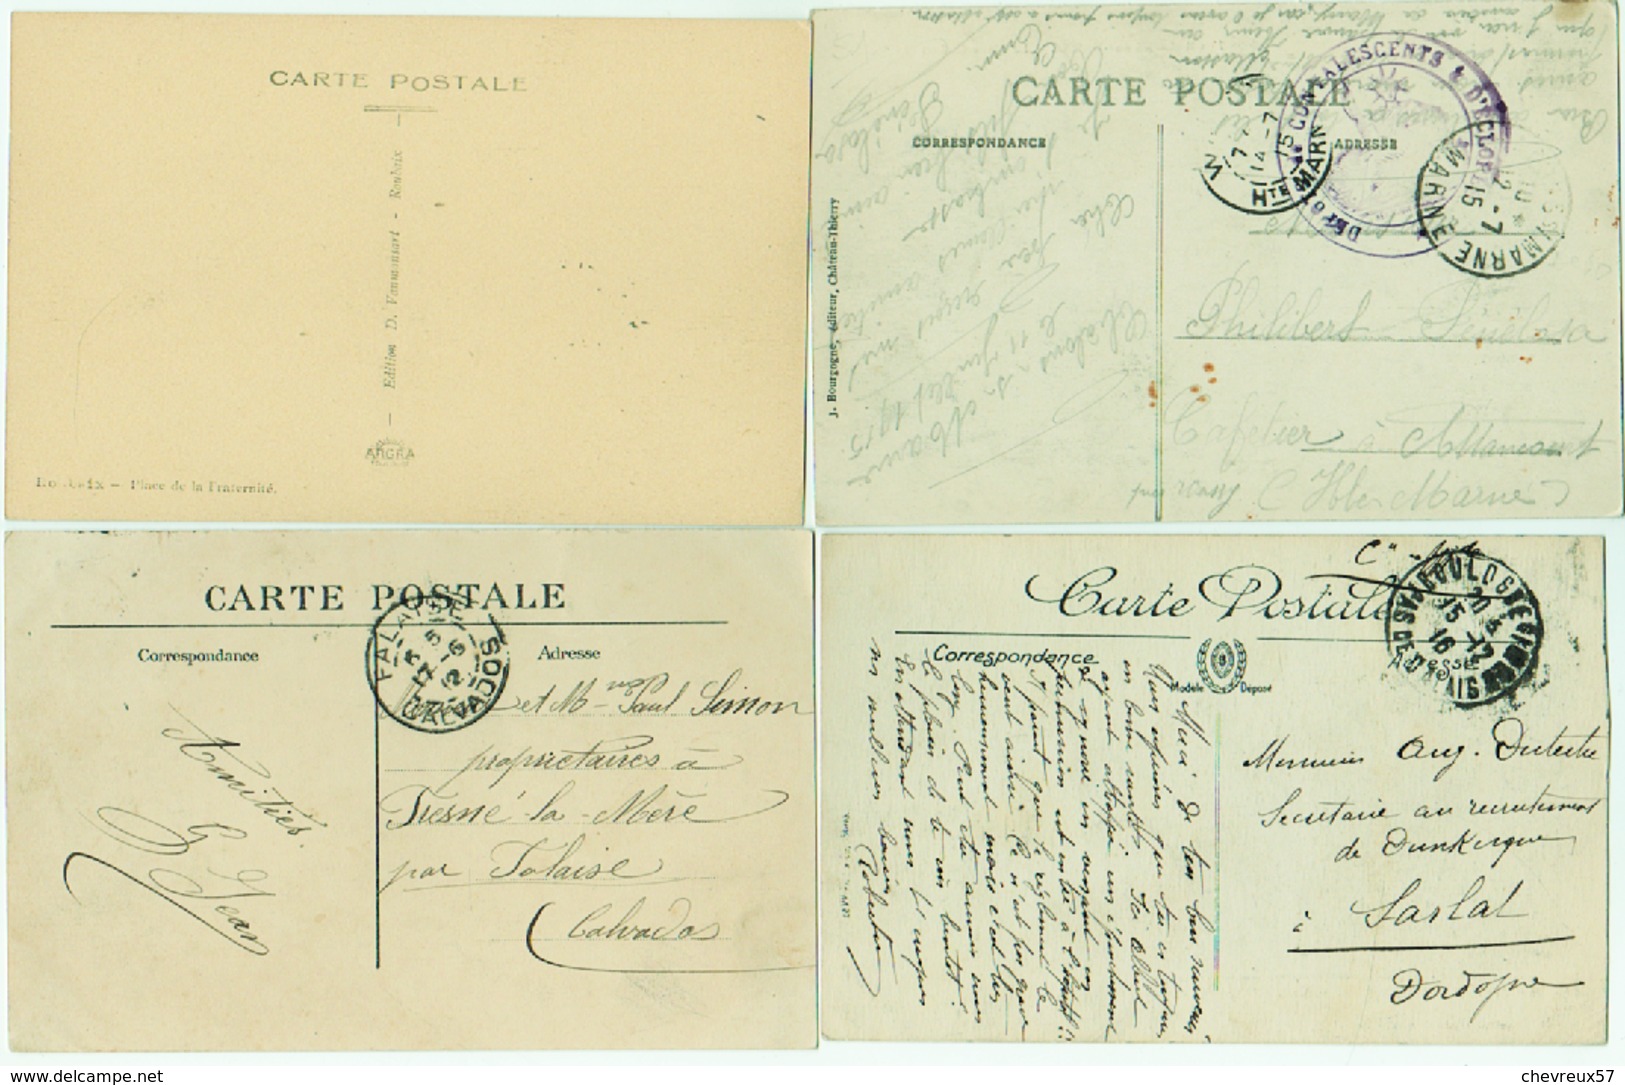 VILLES ET VILLAGES DE FRANCE - LOT 34 - 70 cartes anciennes dont 6 étrangères - 1 curiosité phil. Lot à étudier